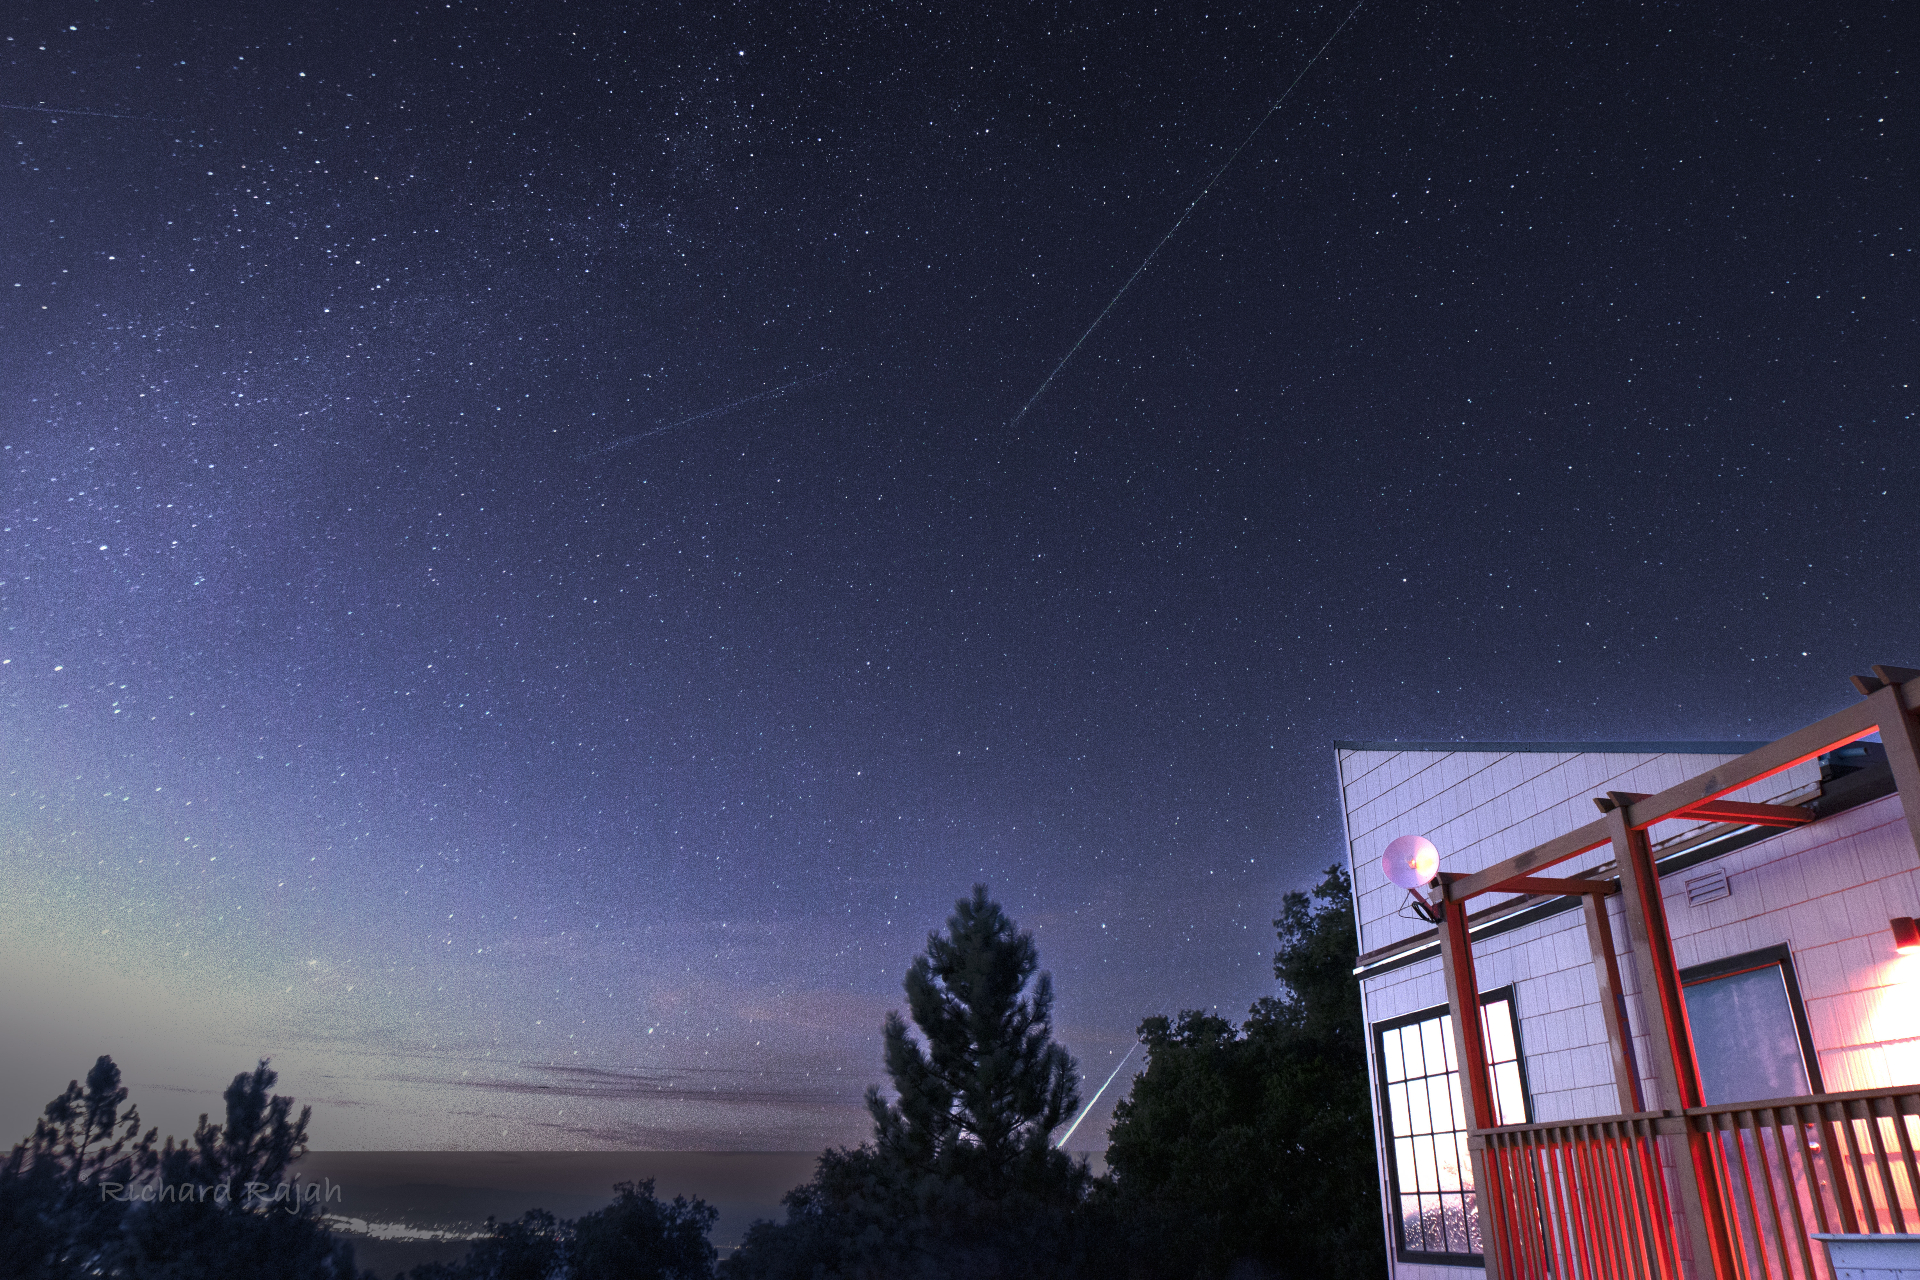 Des météores traversent le ciel et une boule de feu brillante passe derrière les arbres dans la partie inférieure de l'image.  Un bâtiment éclairé se trouve à droite de la photo.